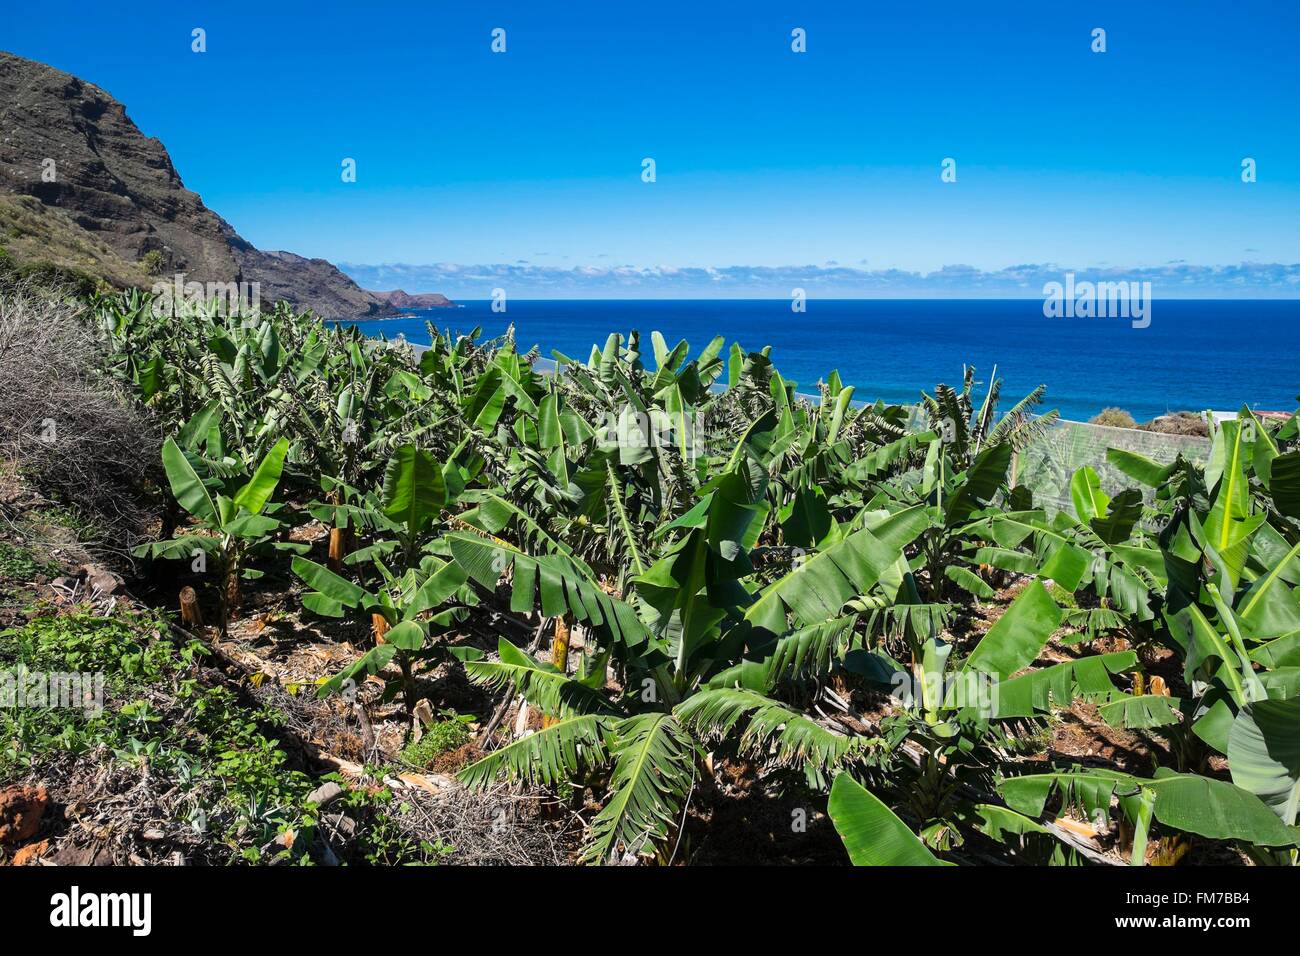 Spagna Isole Canarie La Palma isola dichiarata Riserva della Biosfera dall'UNESCO, costa nord, piantagione di banane in La Fajana de Franceses village Foto Stock